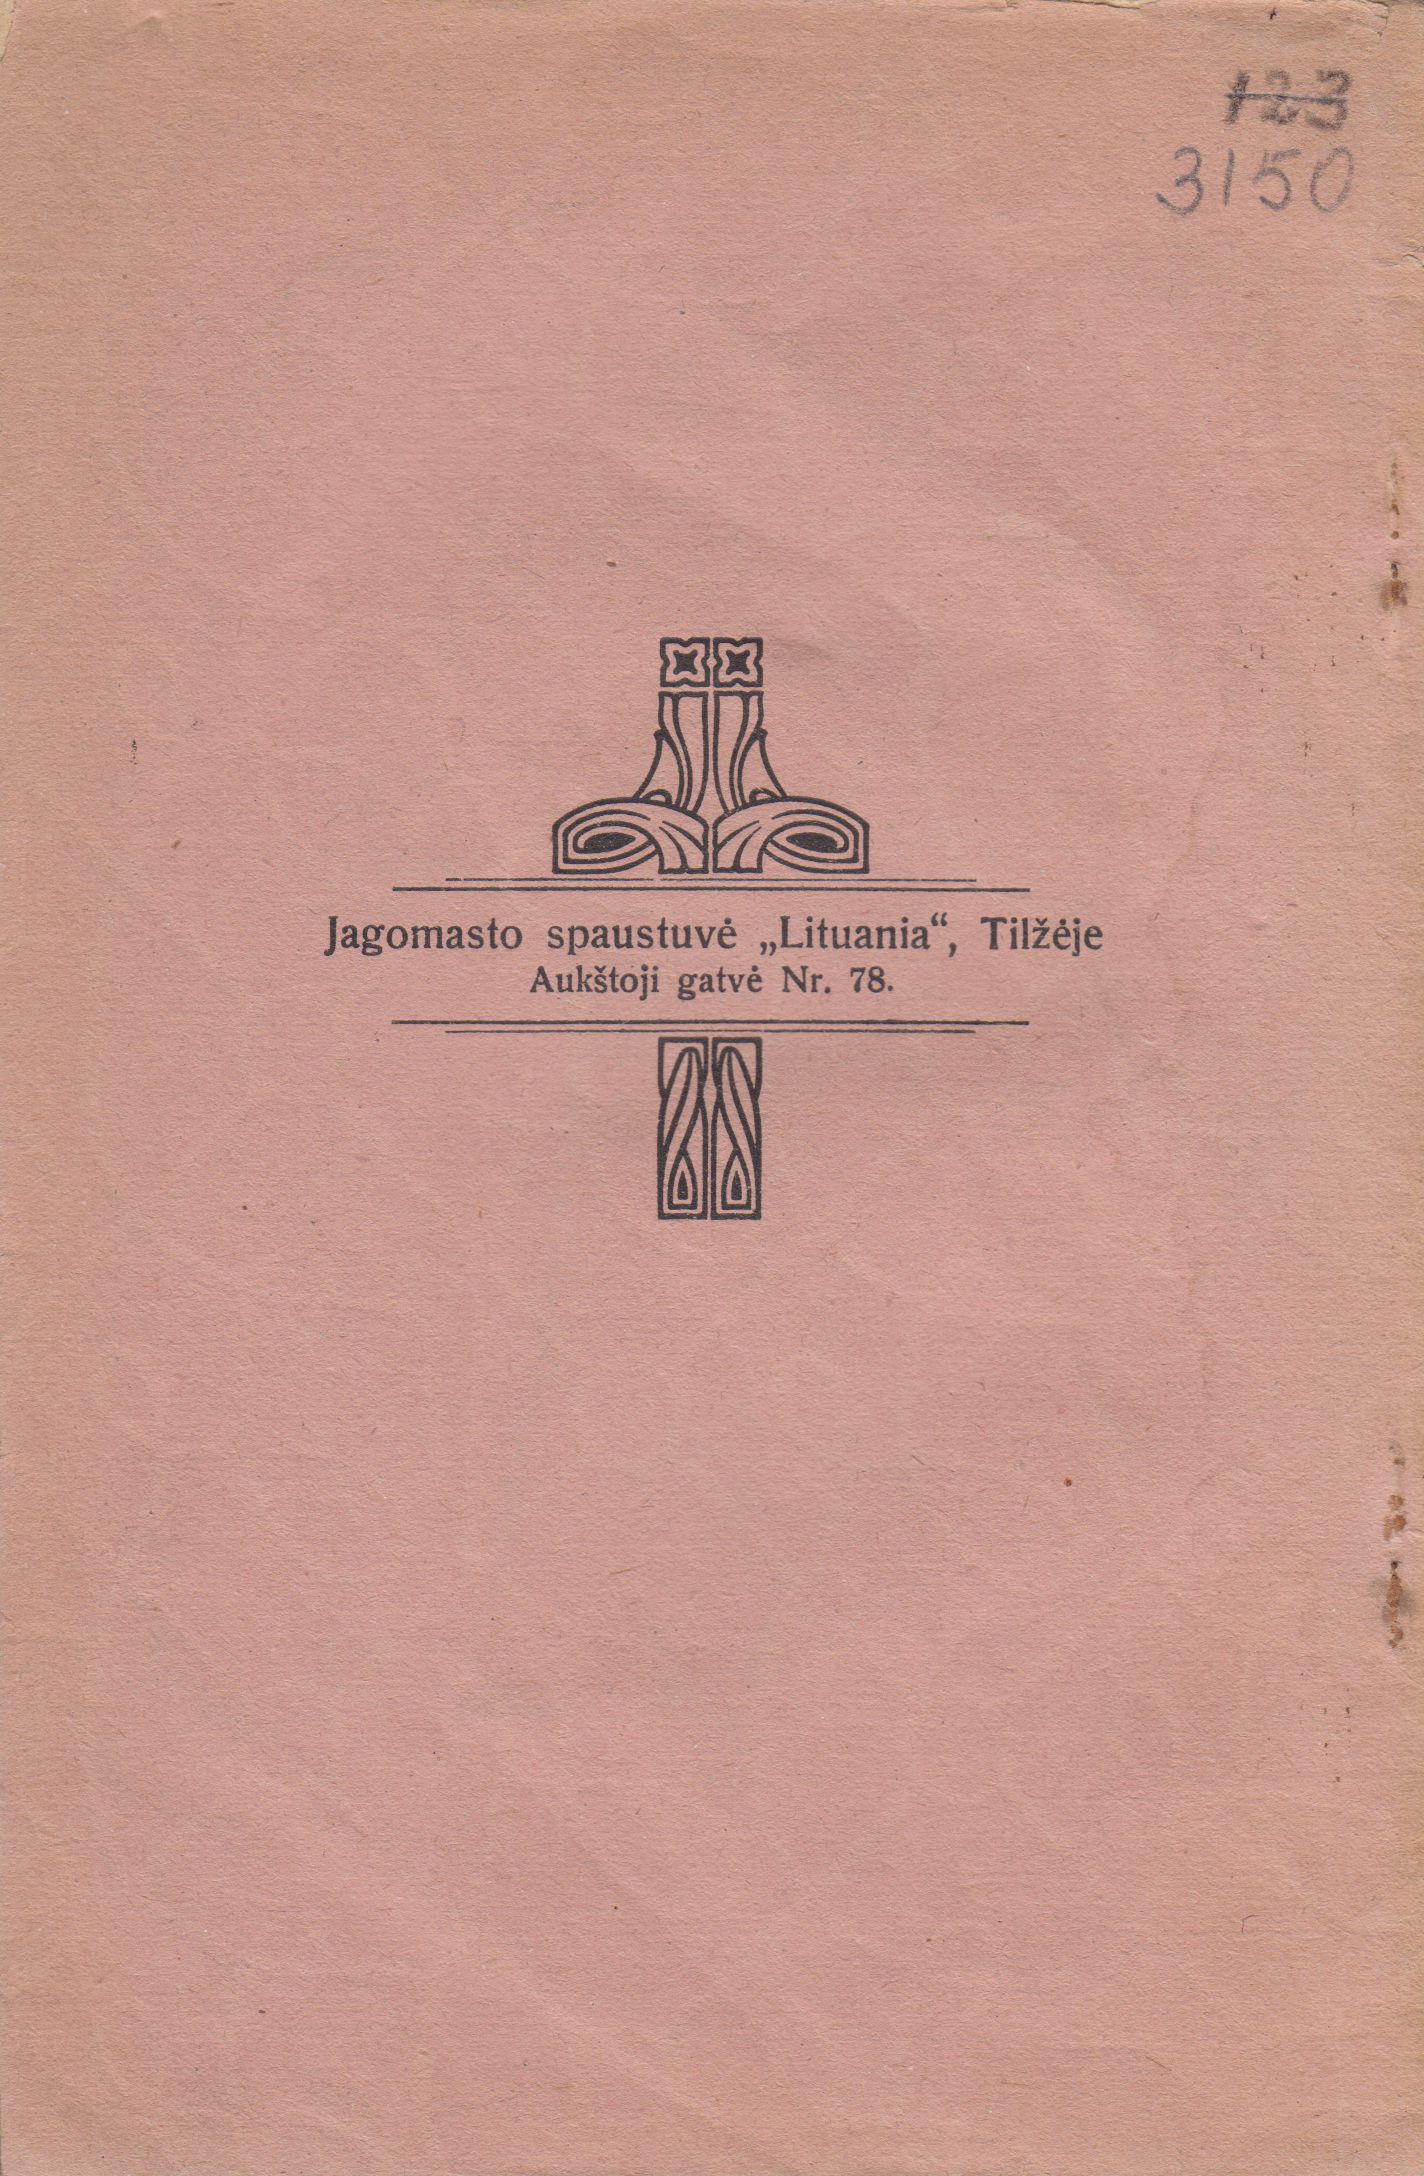 Krislelis. Iš Nemuno.. Tilžė: Jagomasto spaustuvė „Lituania“, 1920 m. MLLM 3150